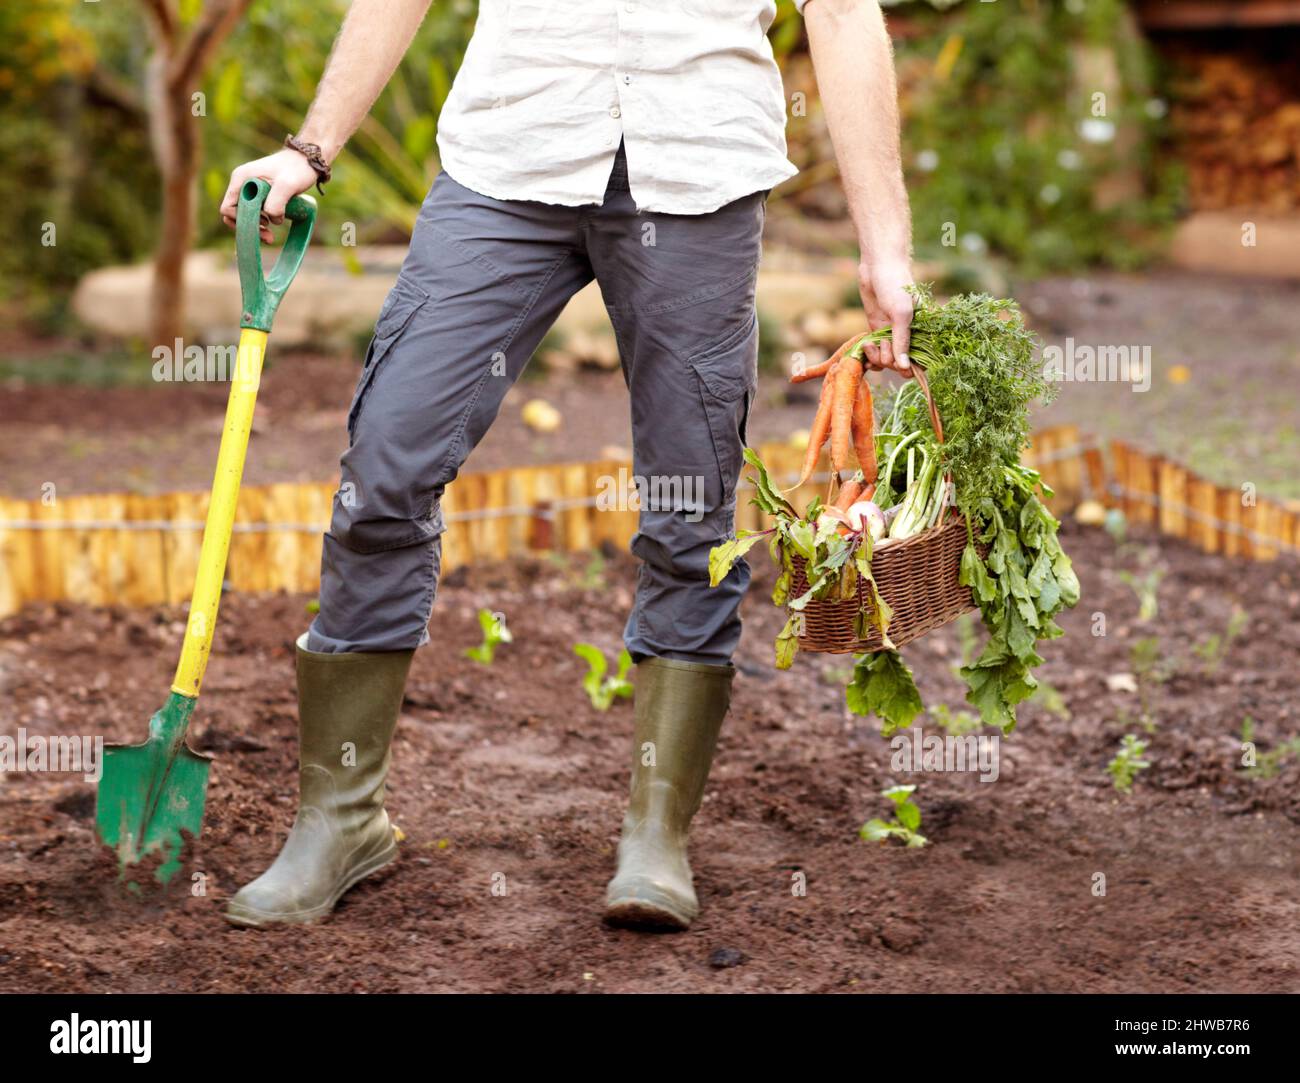 Stolz auf seine Ernte. Beschnittene Ansicht eines Mannes, der frisch gegrabene Karotten hochhält. Stockfoto